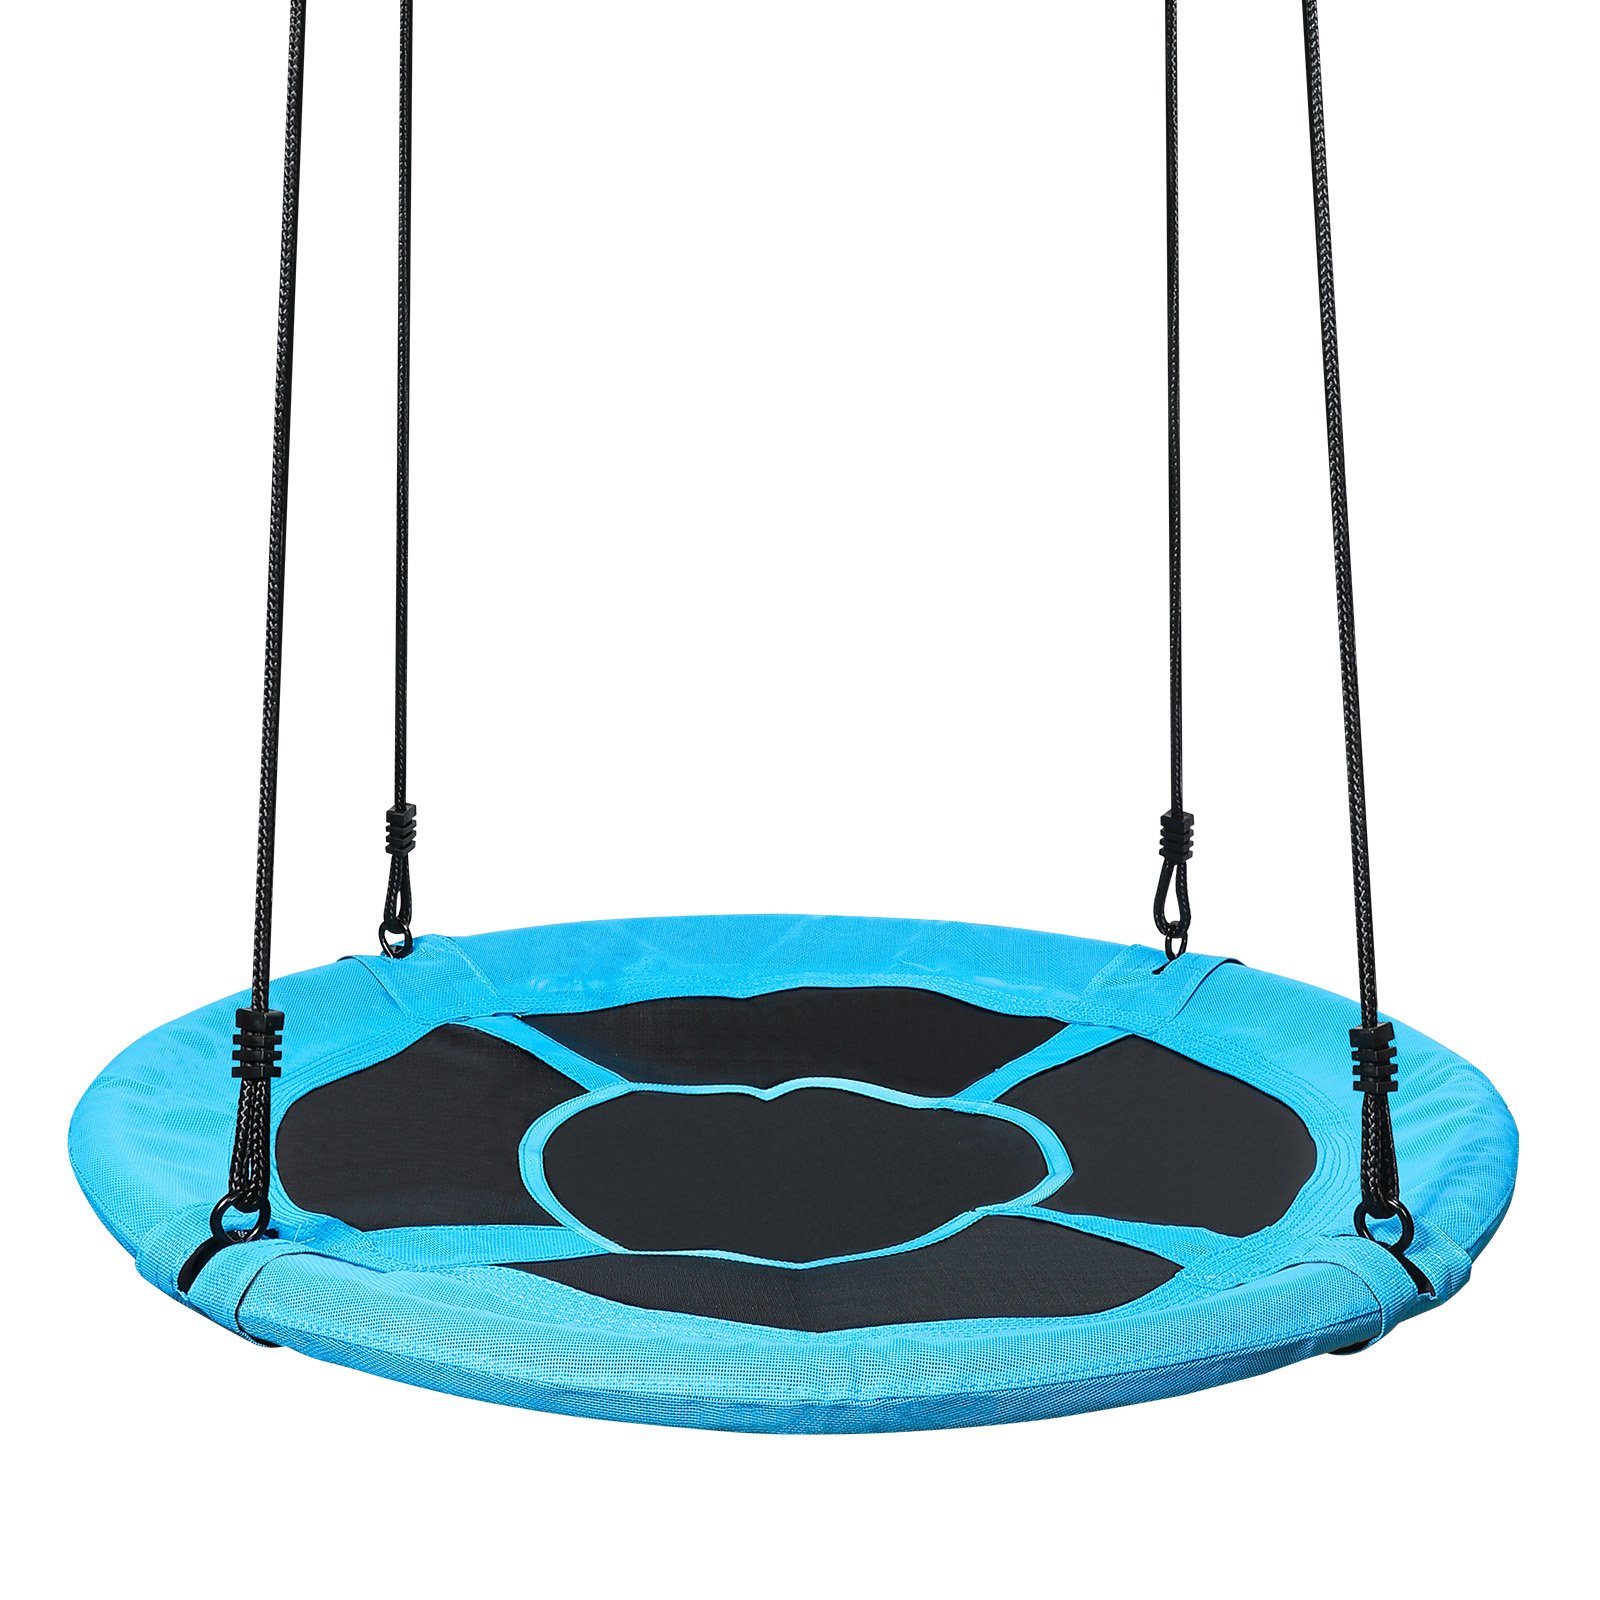 Yorbay Nestschaukel Nestschaukel Tellerschaukel mit 150-180cm verstellbaren Seil, Rundschaukel für Kinder und Erwachsene Blau, Ø100cm/Ø120cm/Ø150cm